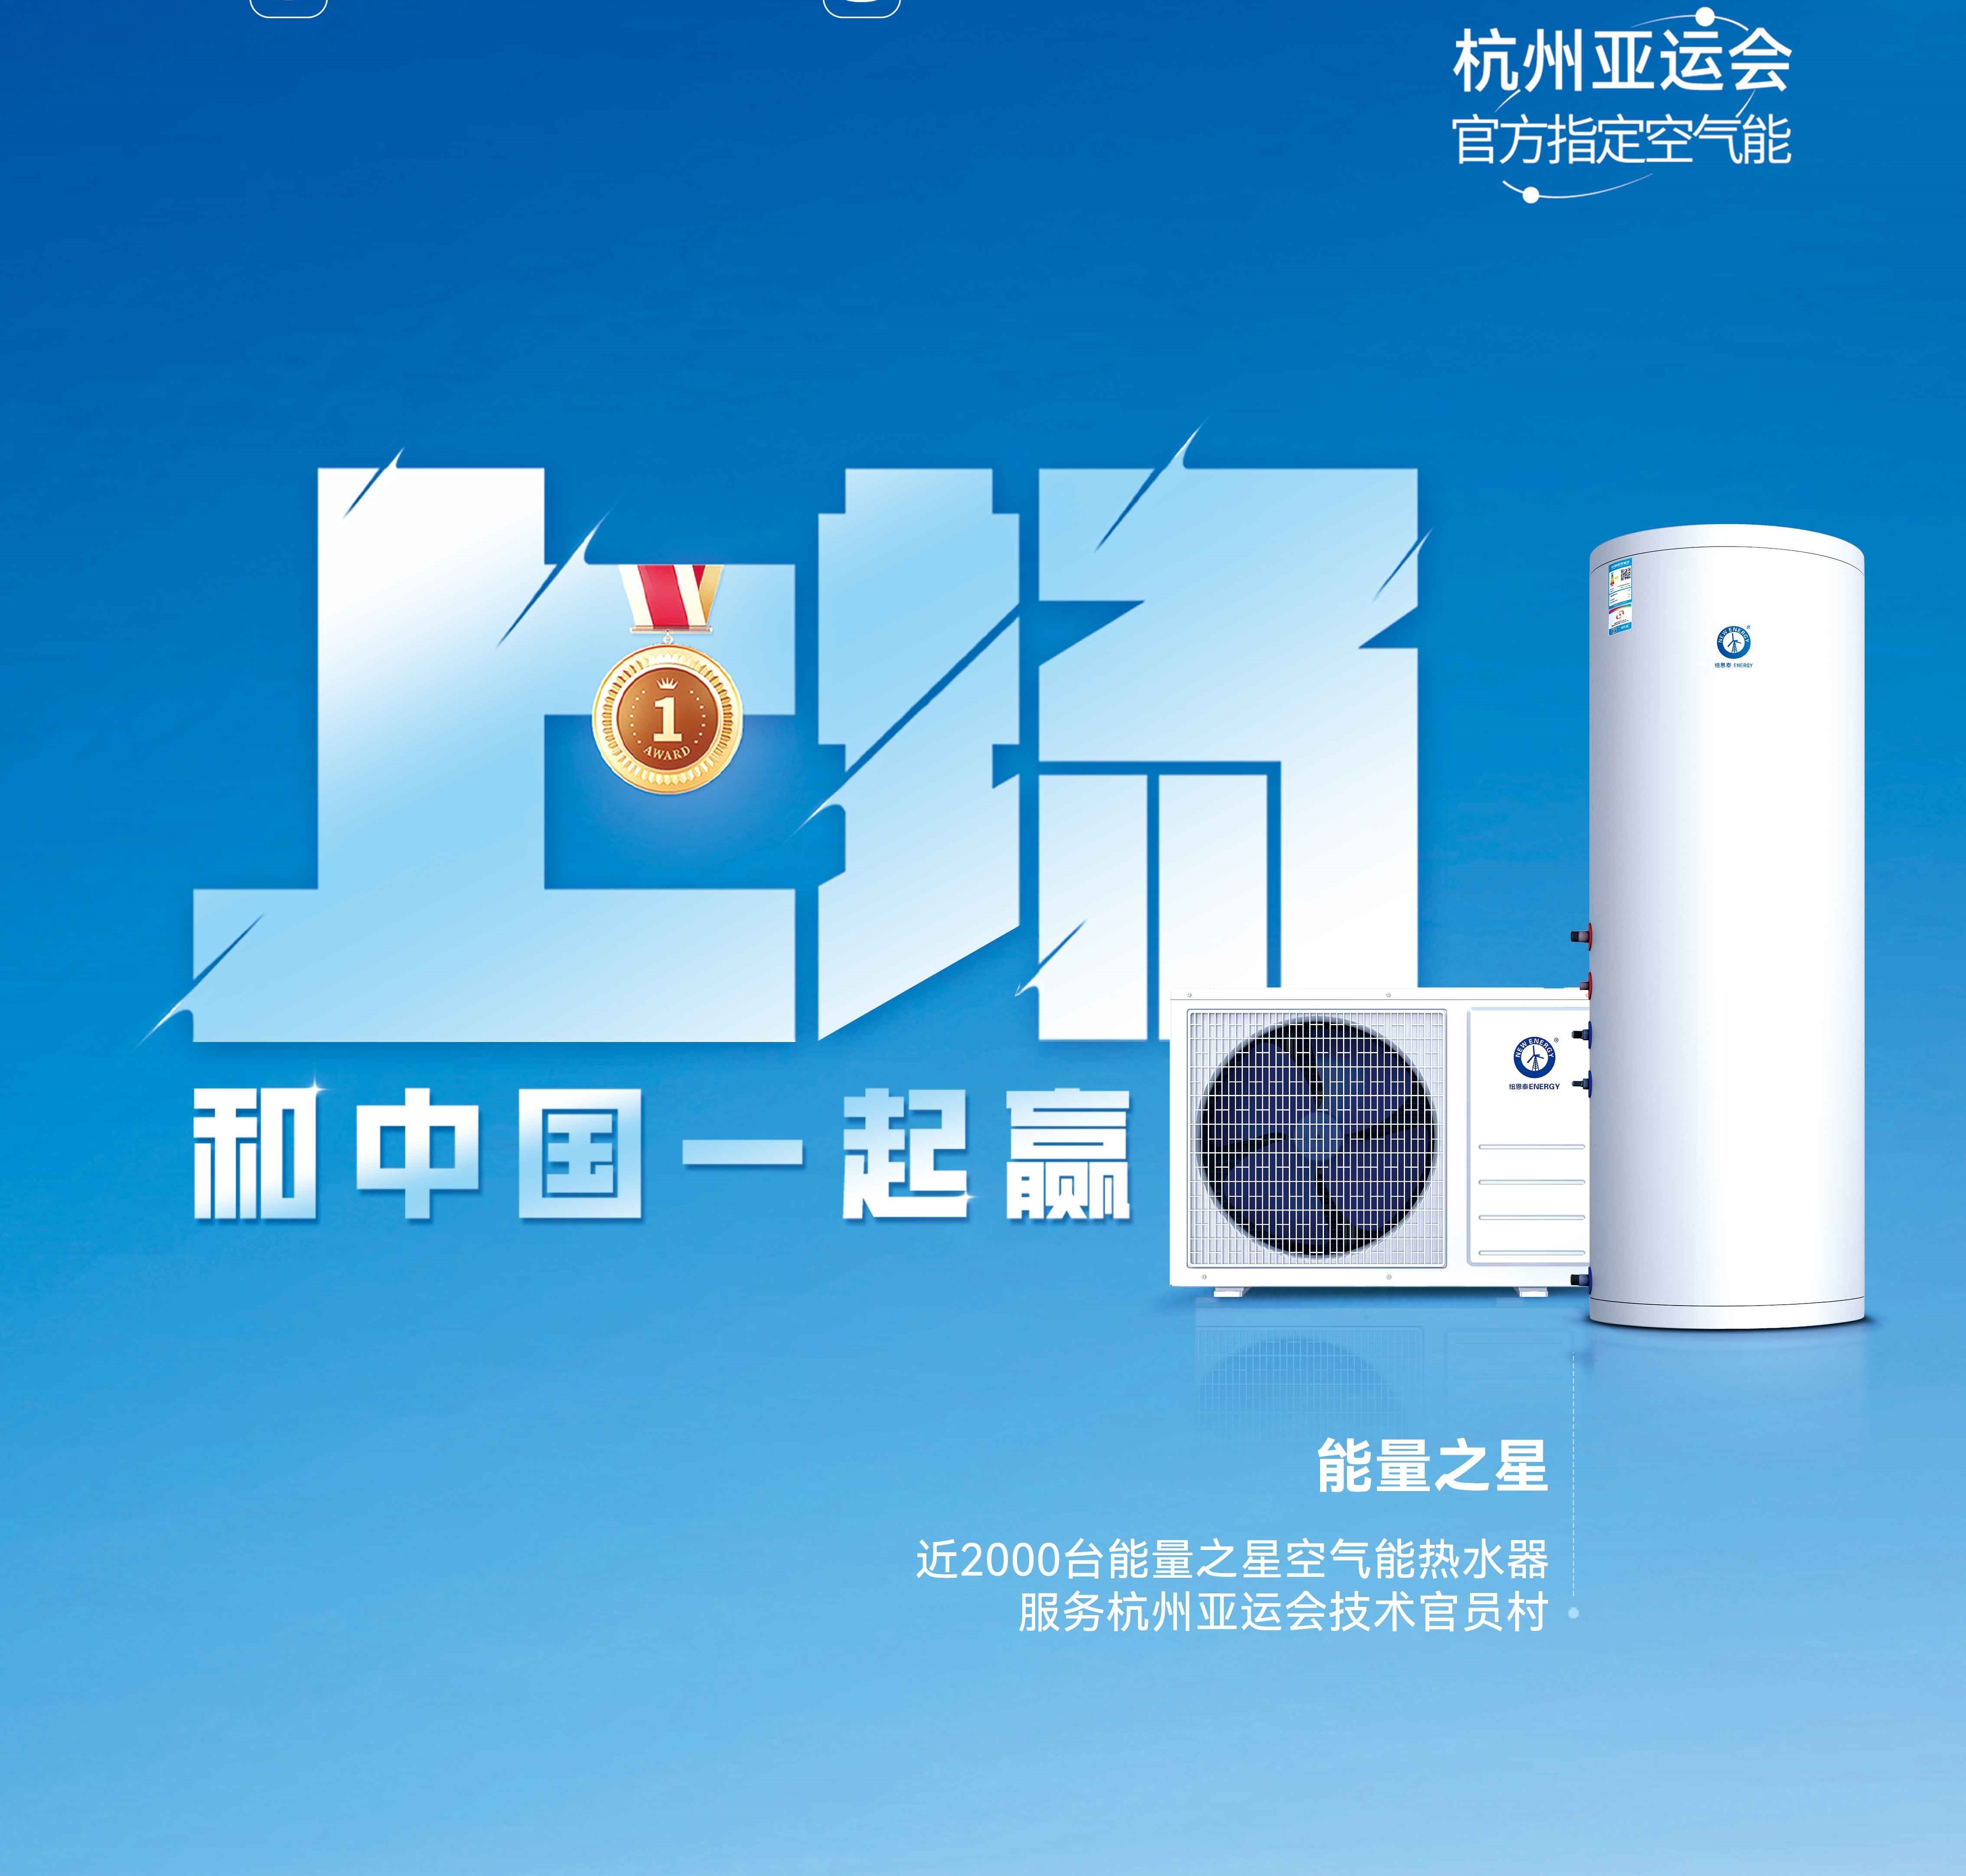 【欧亚国际app空气能热水器】杭州亚运会亚运技术官员村的热水器用的是哪个供应商的产品？